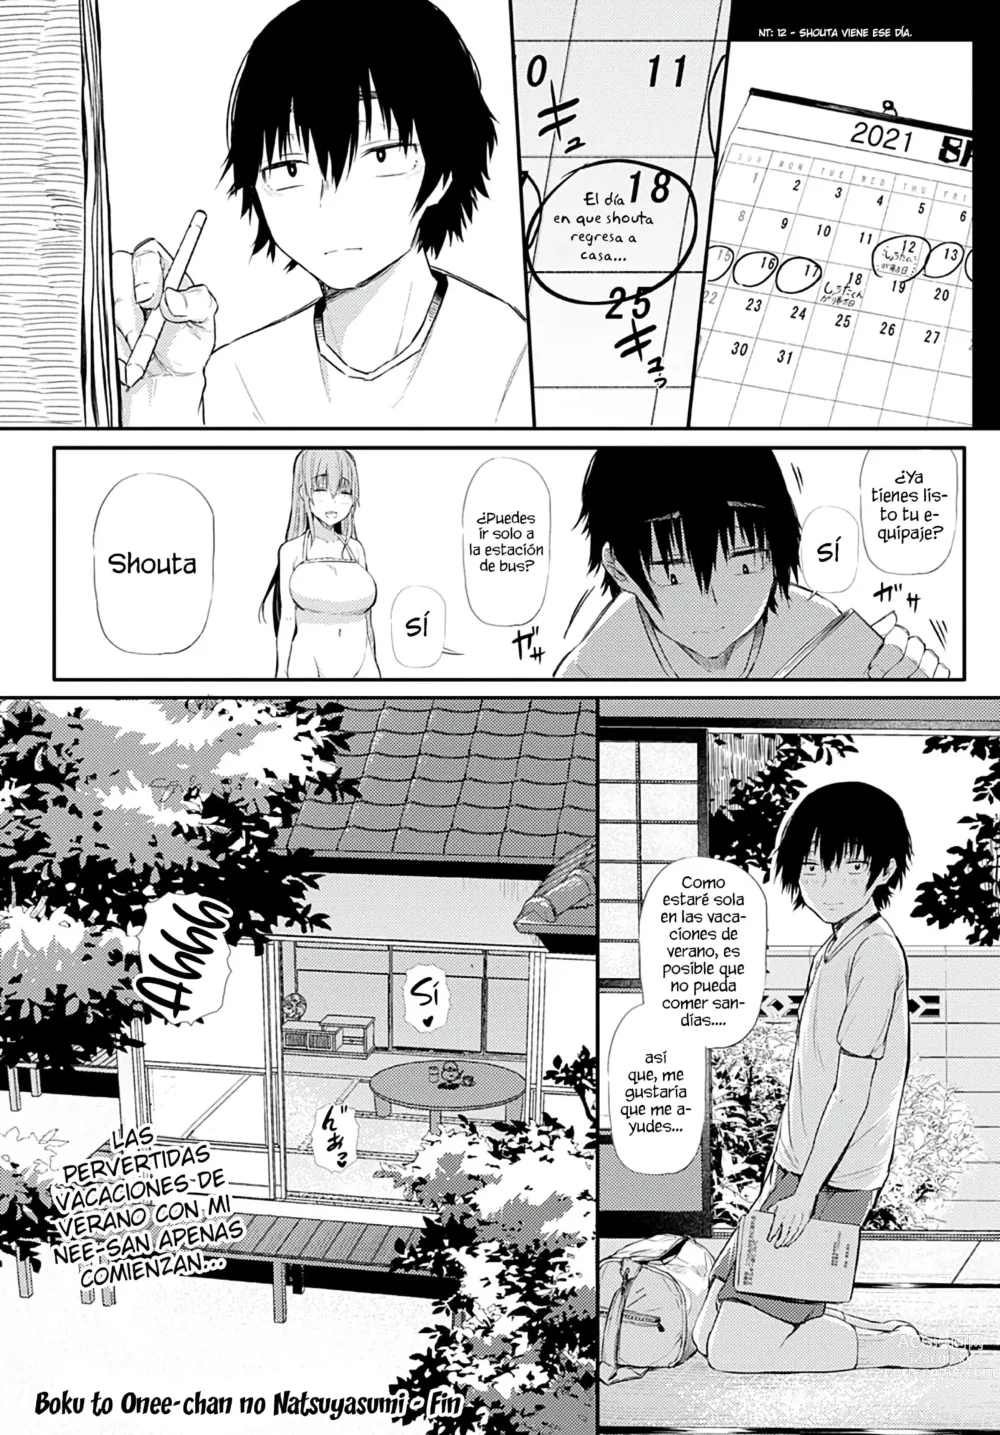 Page 24 of manga Boku to Onee-chan no Natsuyasumi